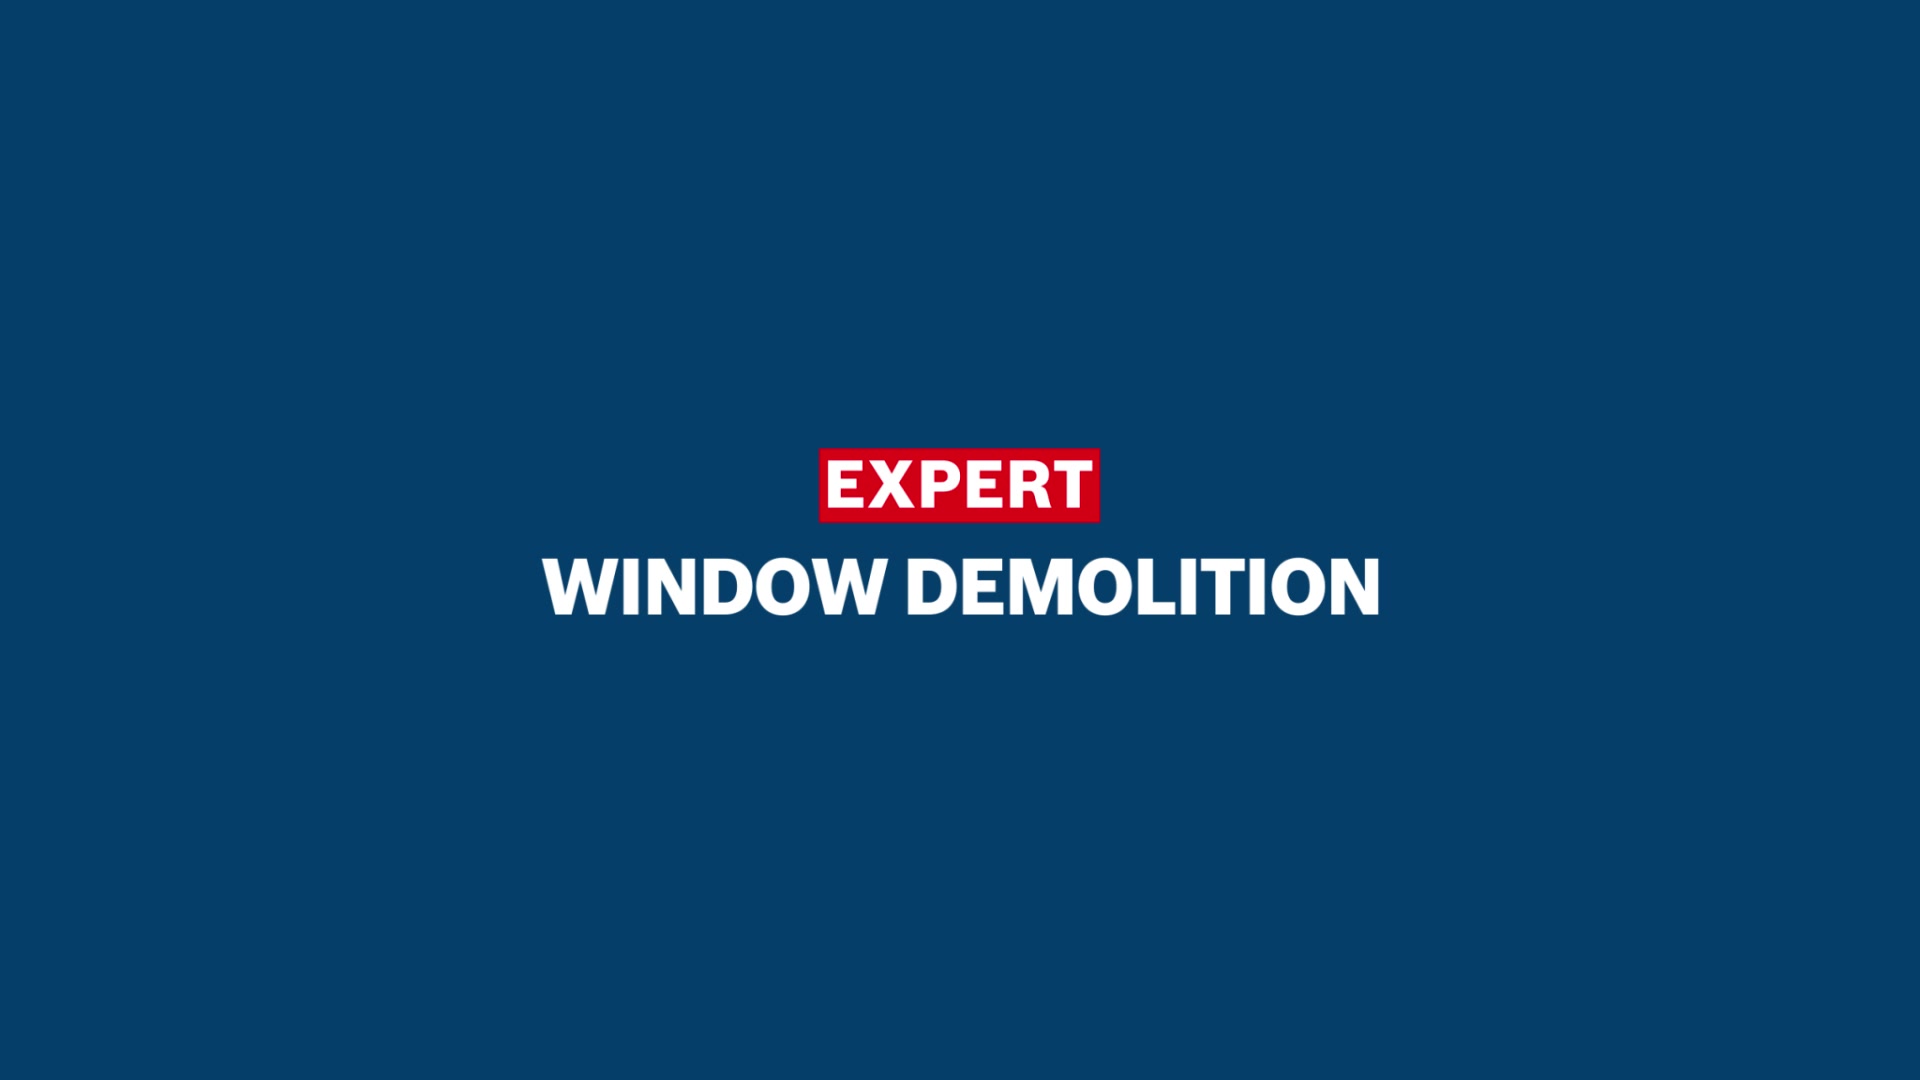 EXPERT ‘Window Demolition’